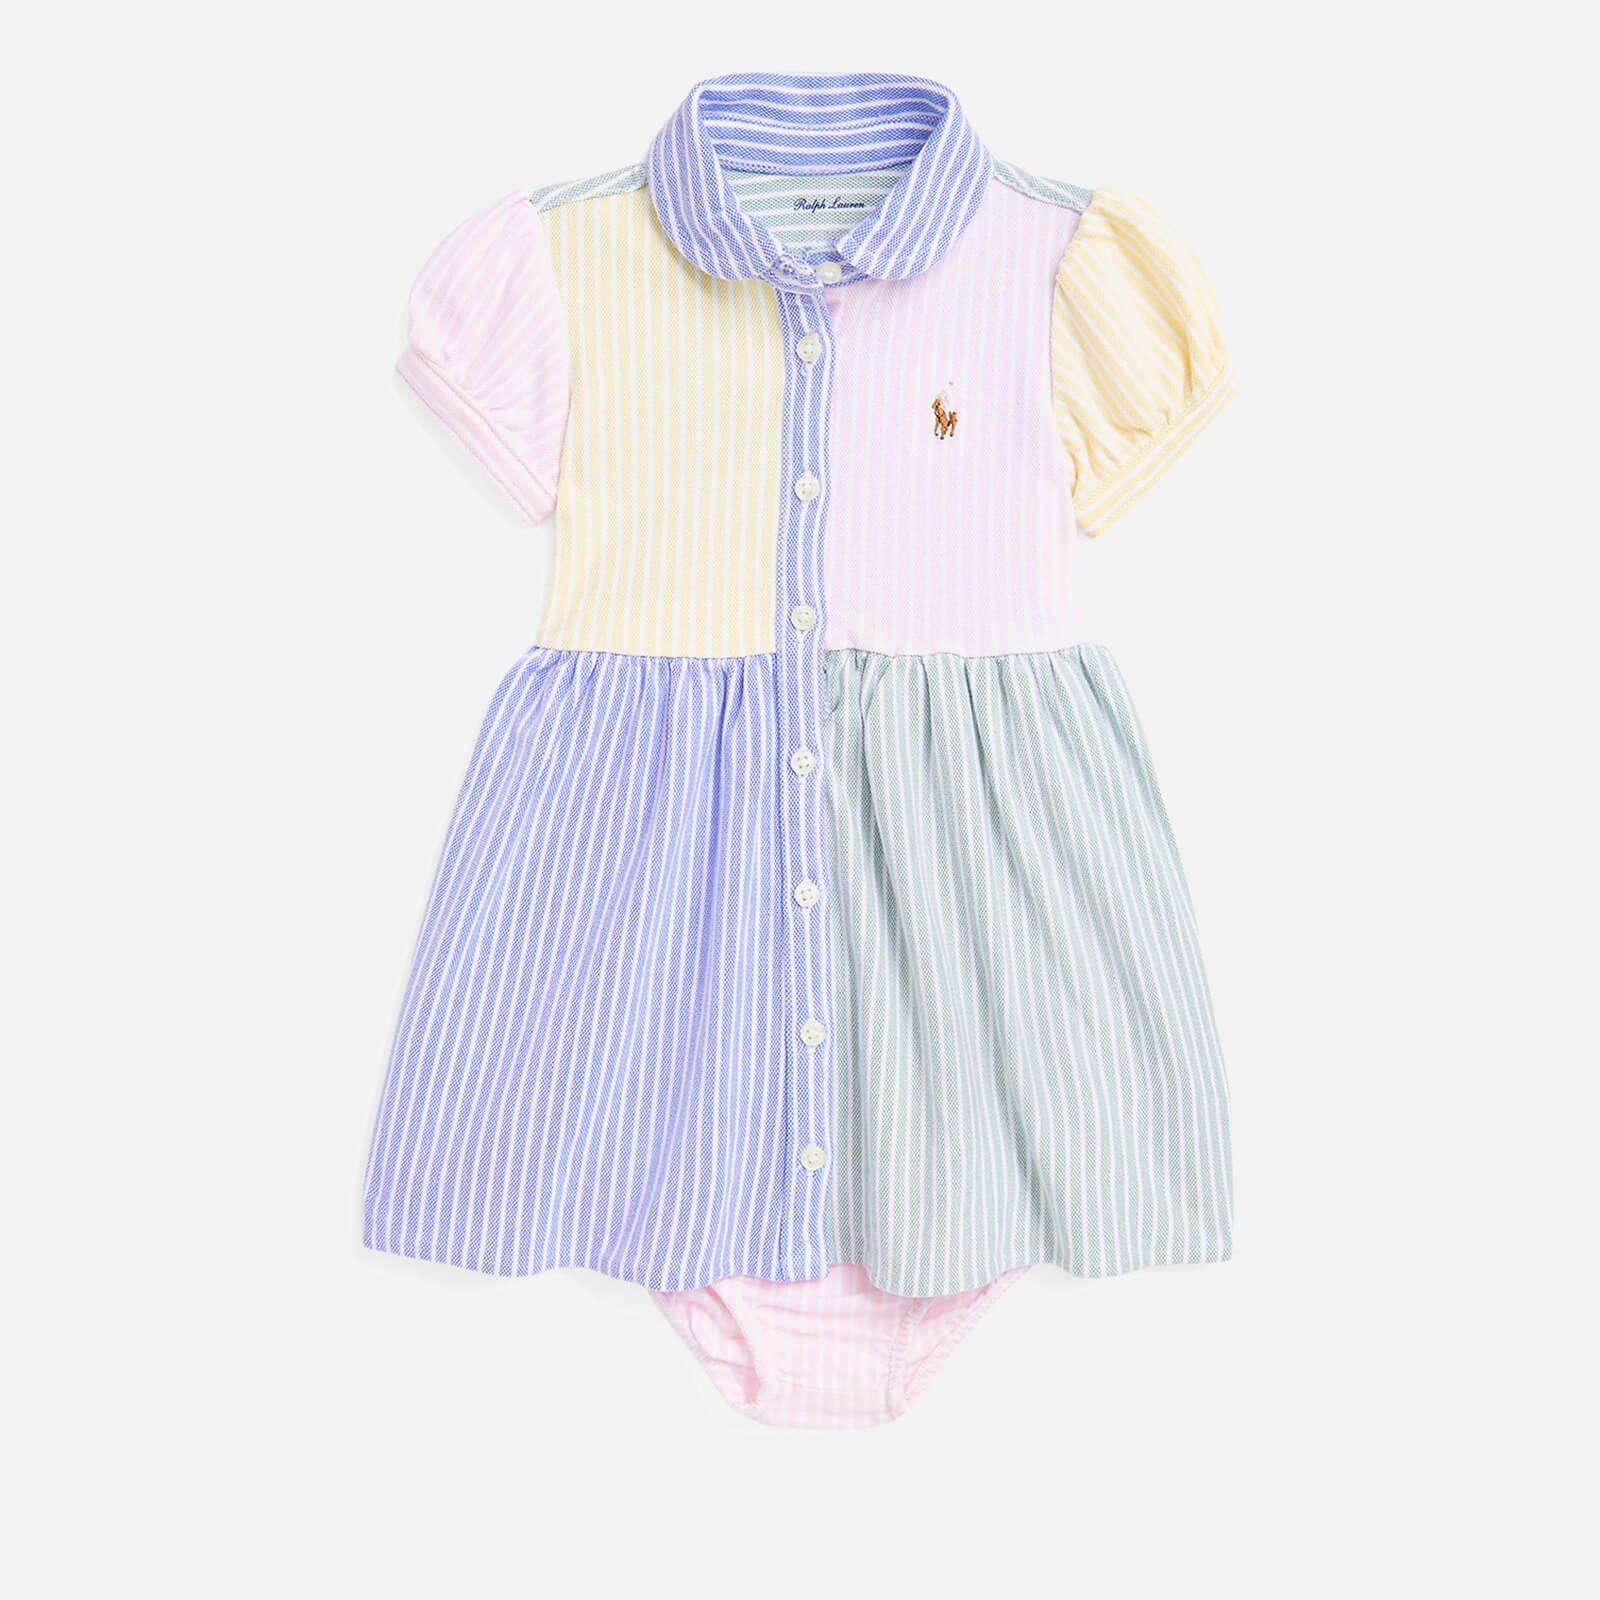 Polo Ralph Lauren Baby Girls' Cotton Dress - 9 Months